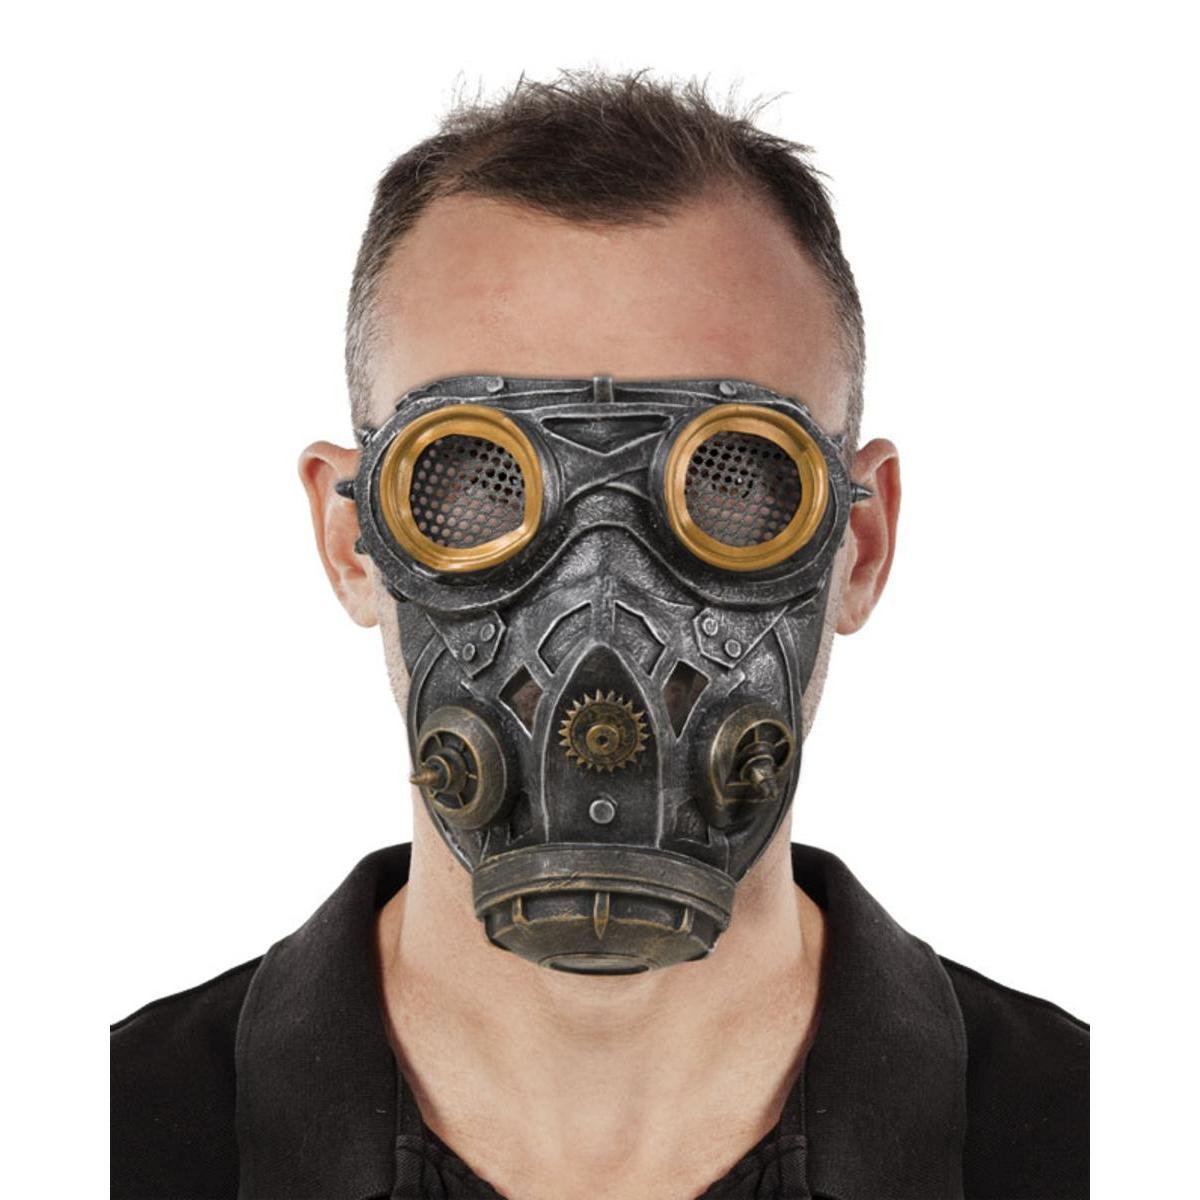 Masque à gaz adulte - L 19 x H 0.5 x l 22 cm - Gris - PTIT CLOWN